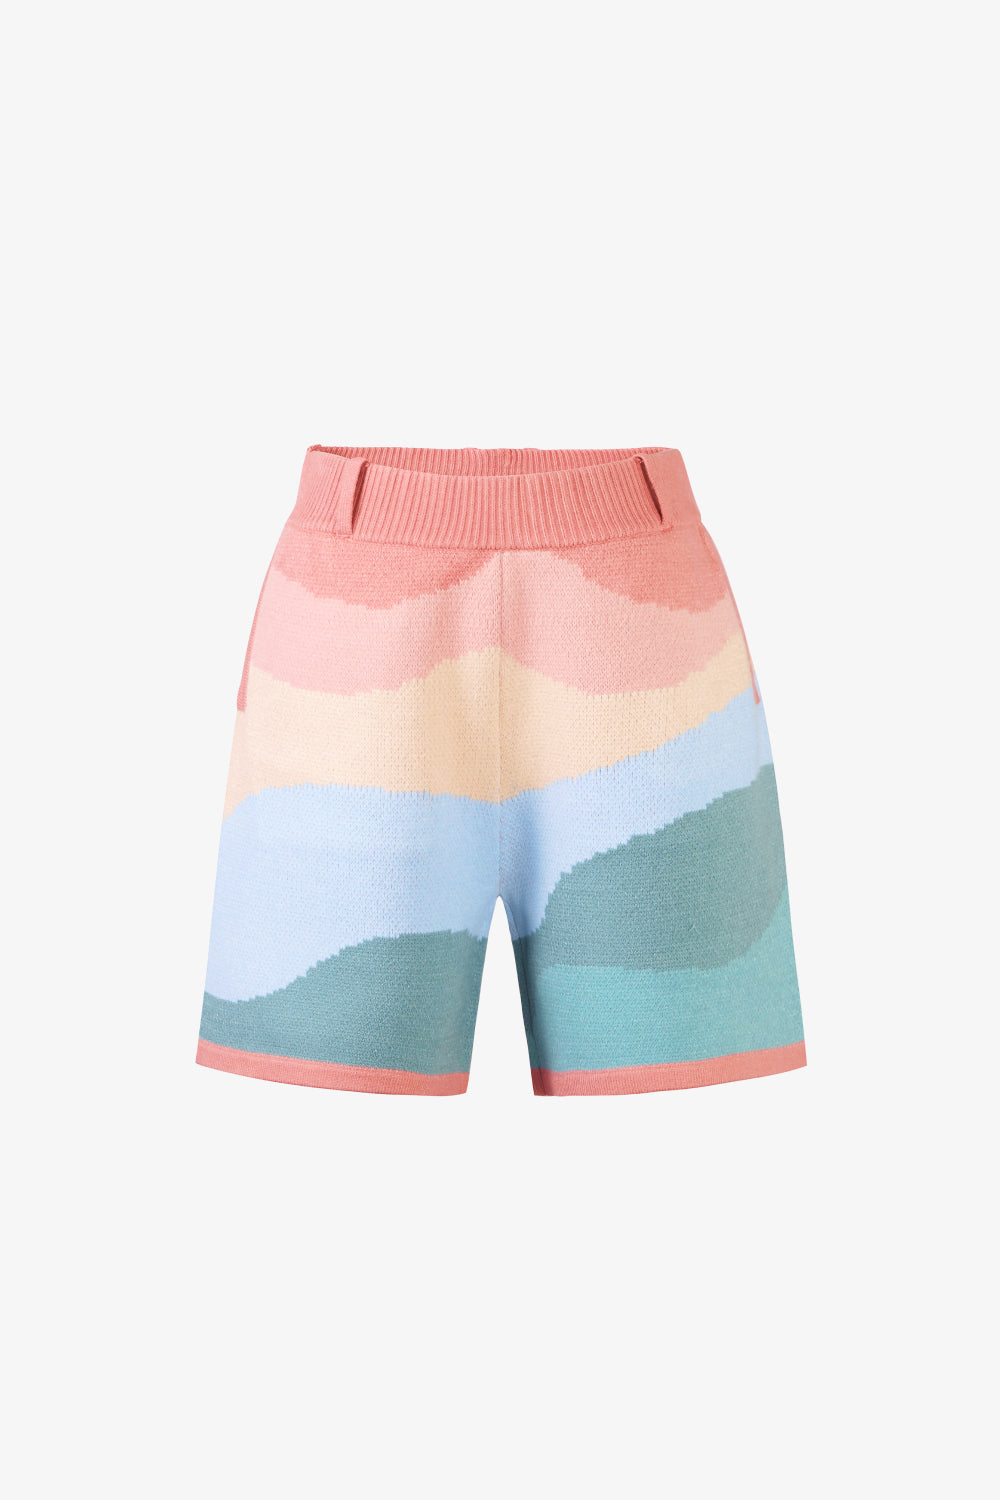 Pastel Wave Shorts